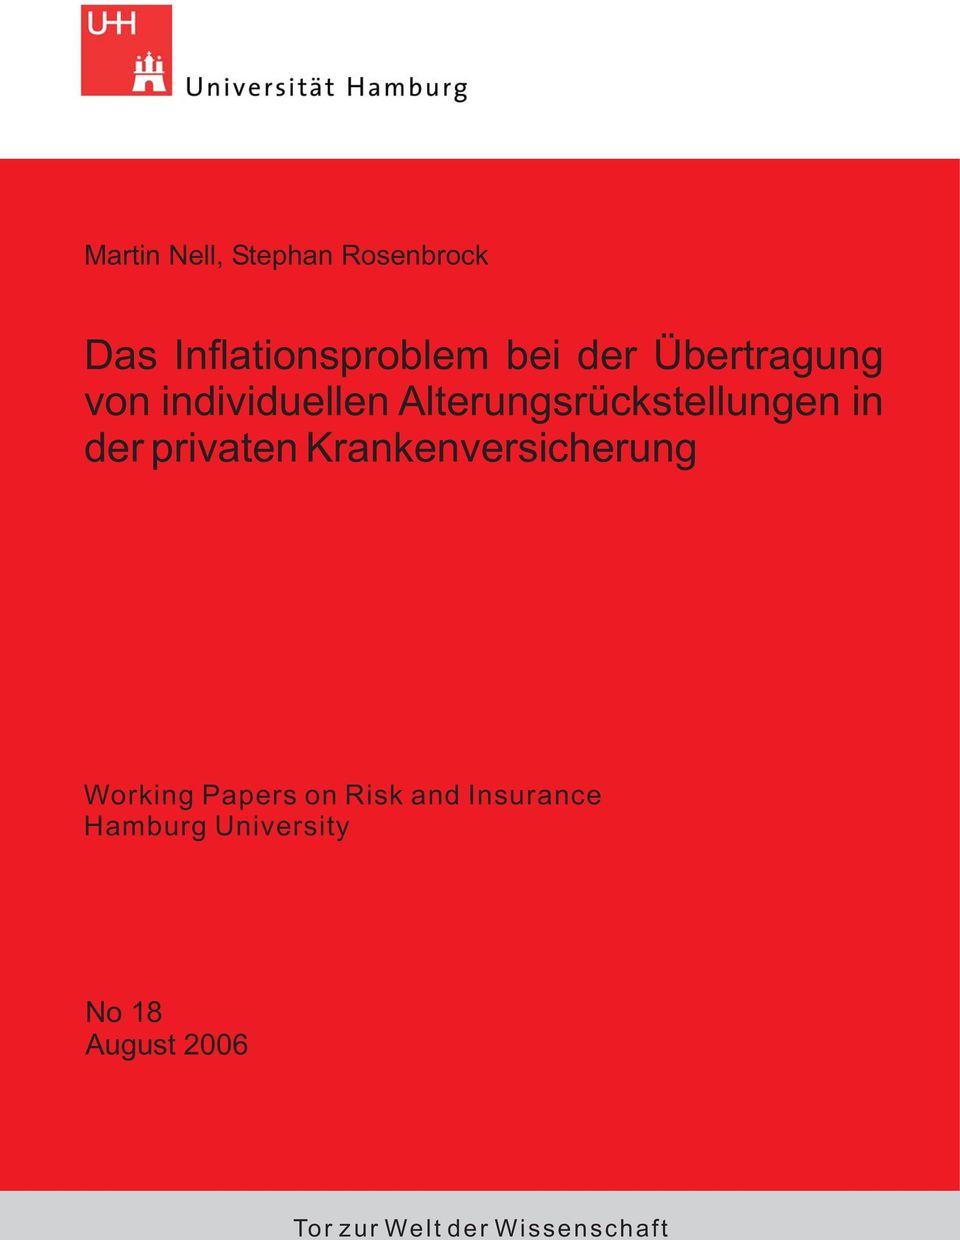 privaten rankenversicherung Working Papers on Risk and